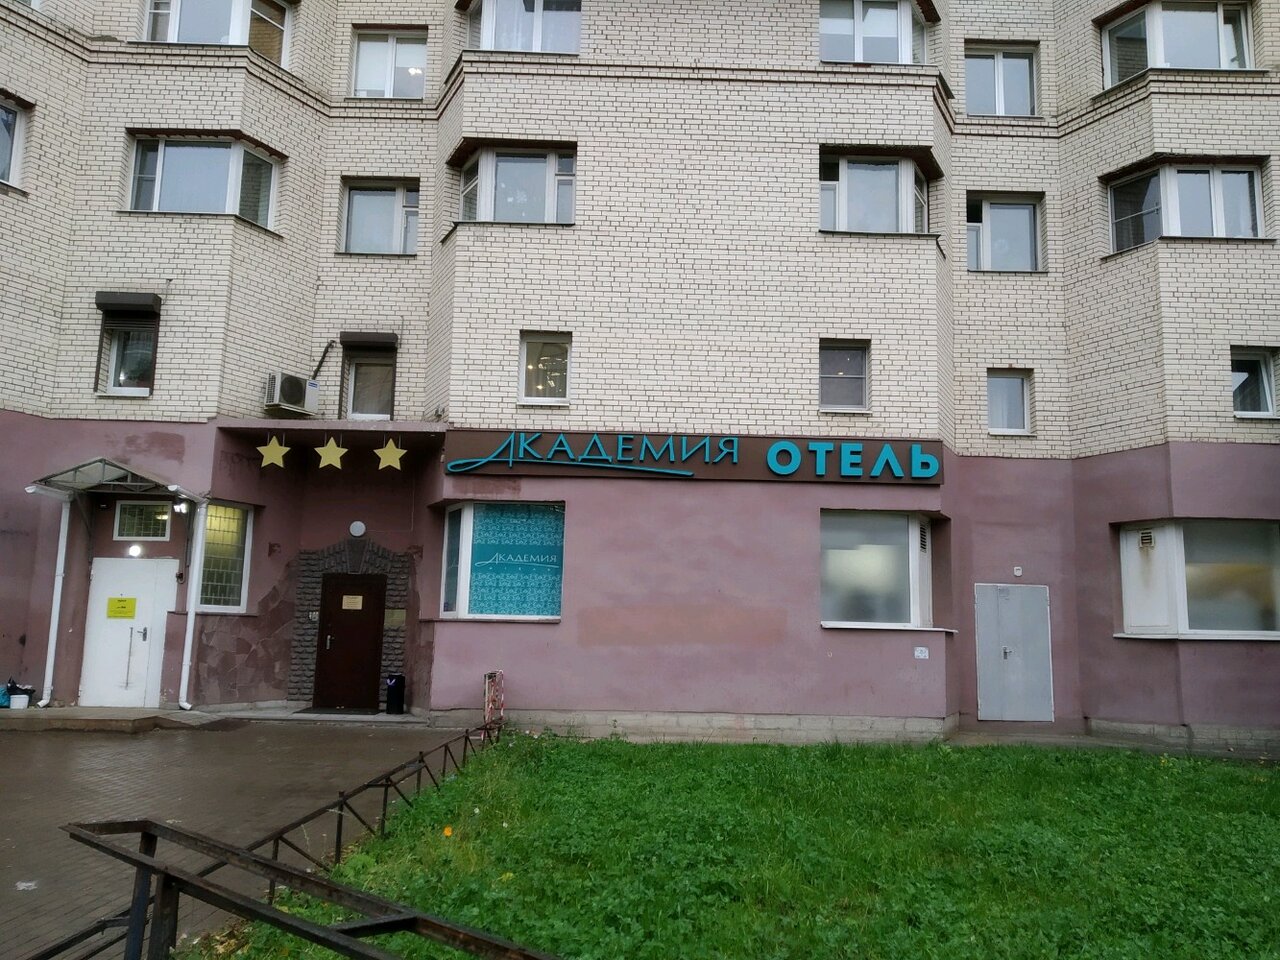 отель академия санкт петербург